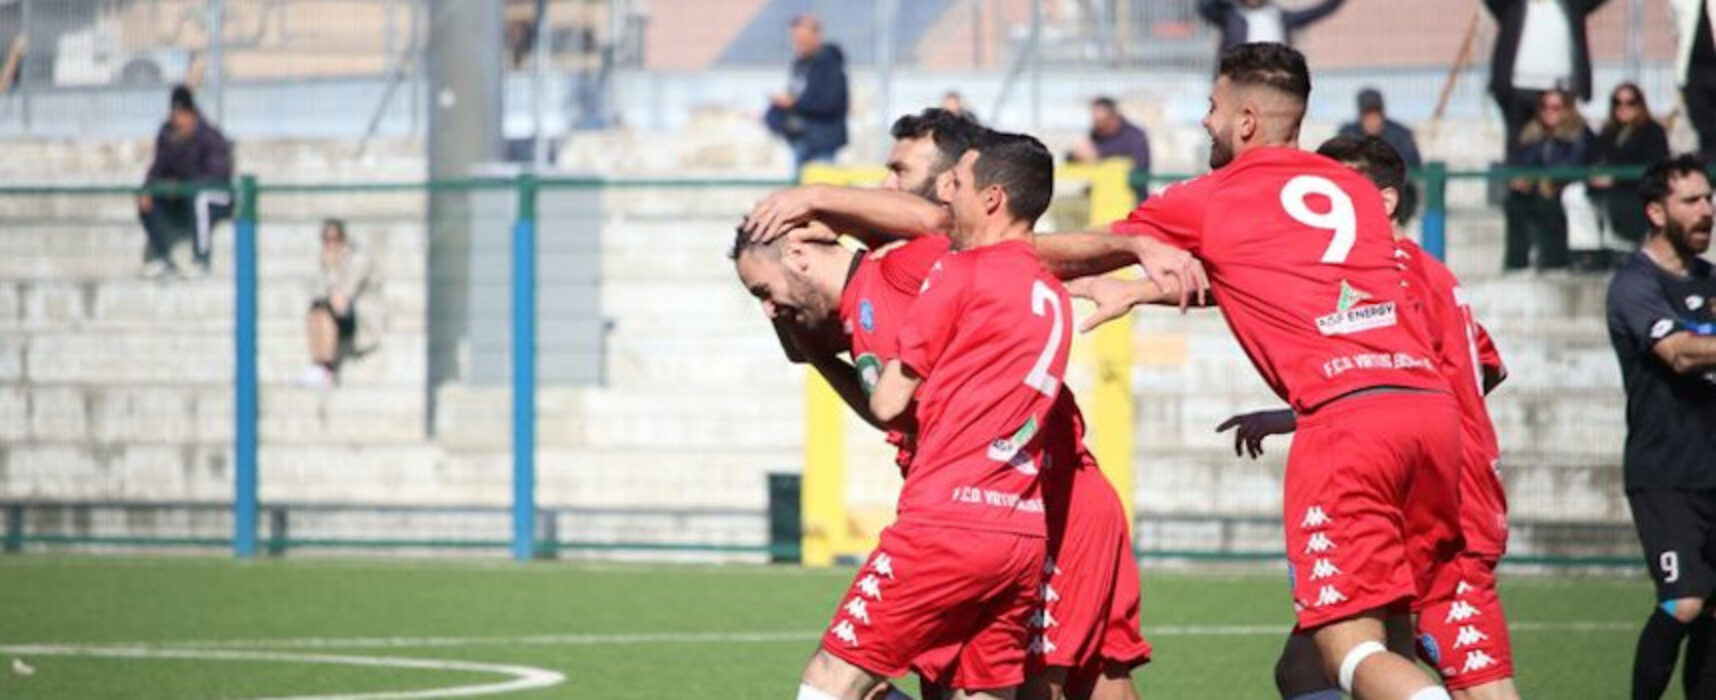 Calcio regionale, Don Uva contro Real San Giovanni, Virtus Bisceglie ospita il Sammarco